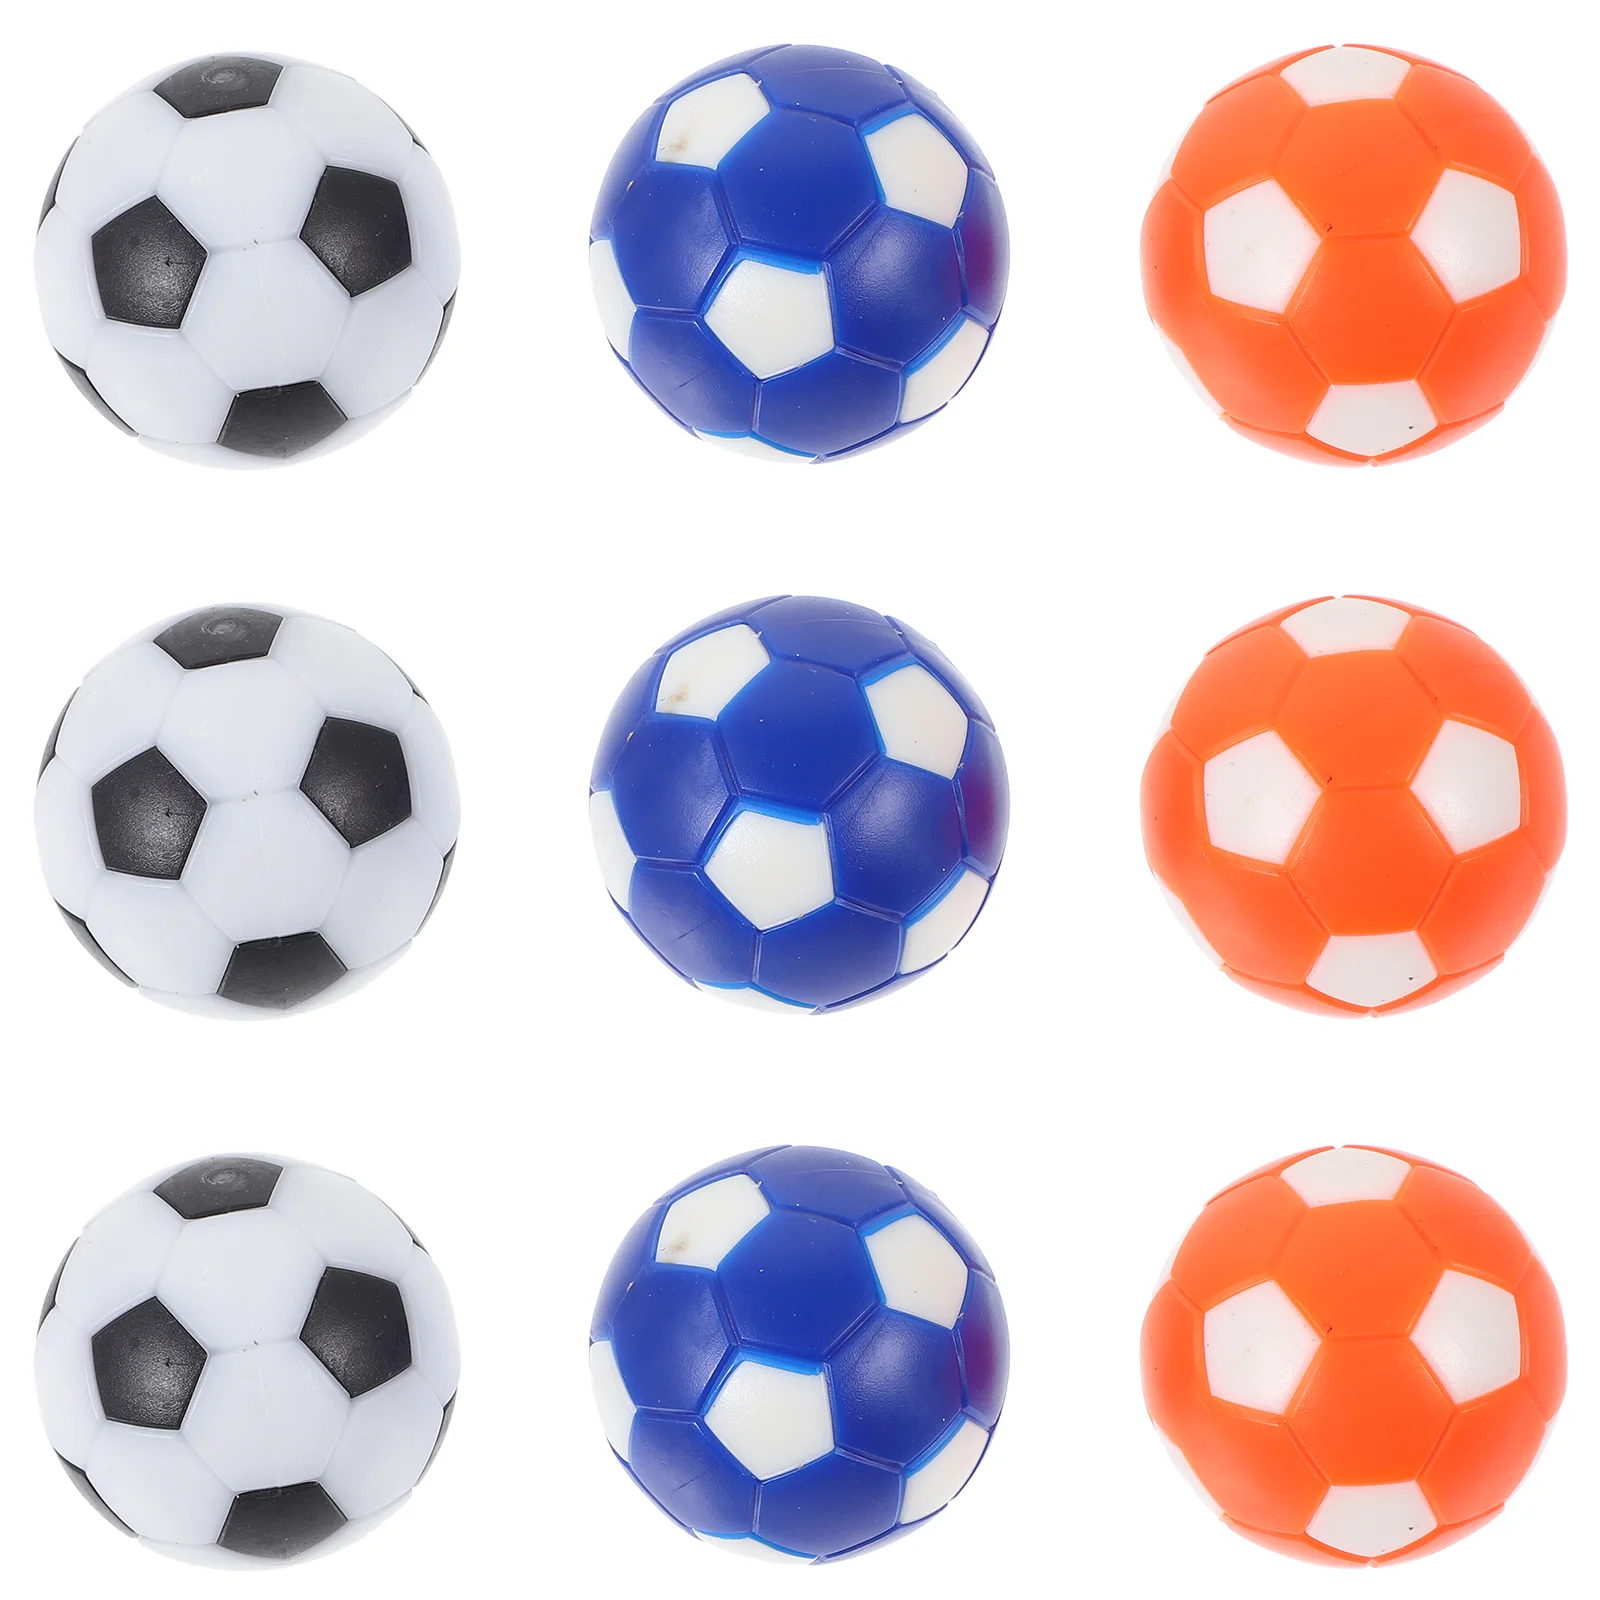 

Детская мини-машина для настольного футбола, аксессуары, цветная модель футбольного мяча 28 мм, игровые принадлежности для настольного футбола, новинка